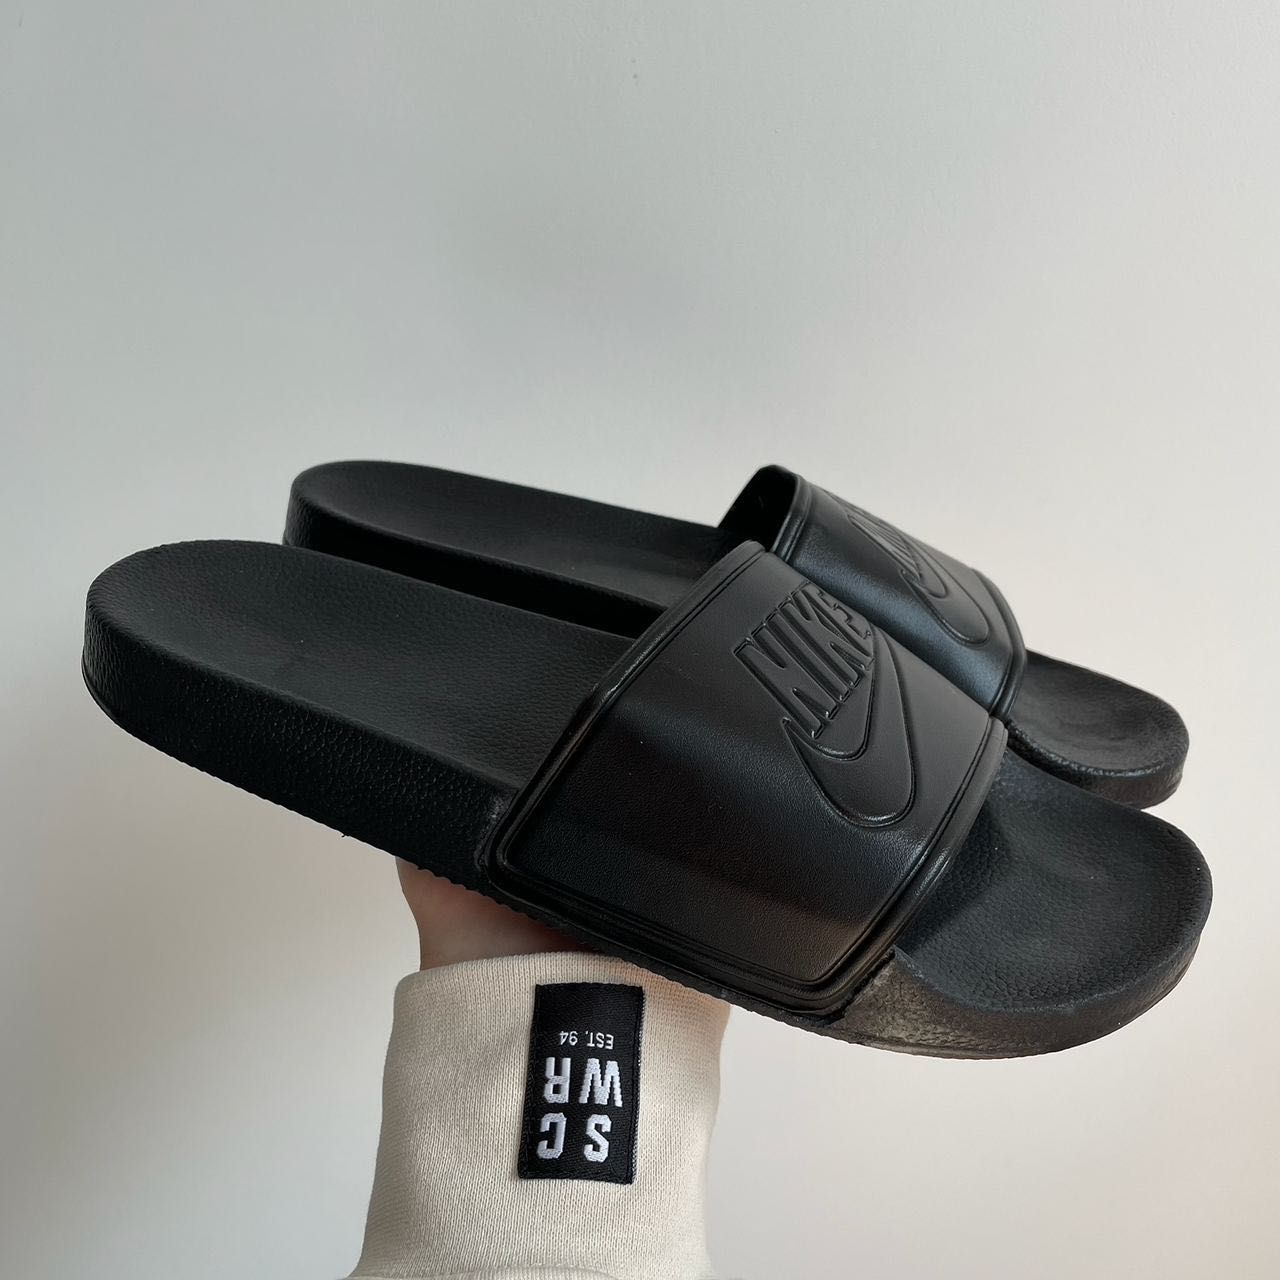 Мужские тапочки, сланцы, шлепки Nike Slides black. Размеры 41-45